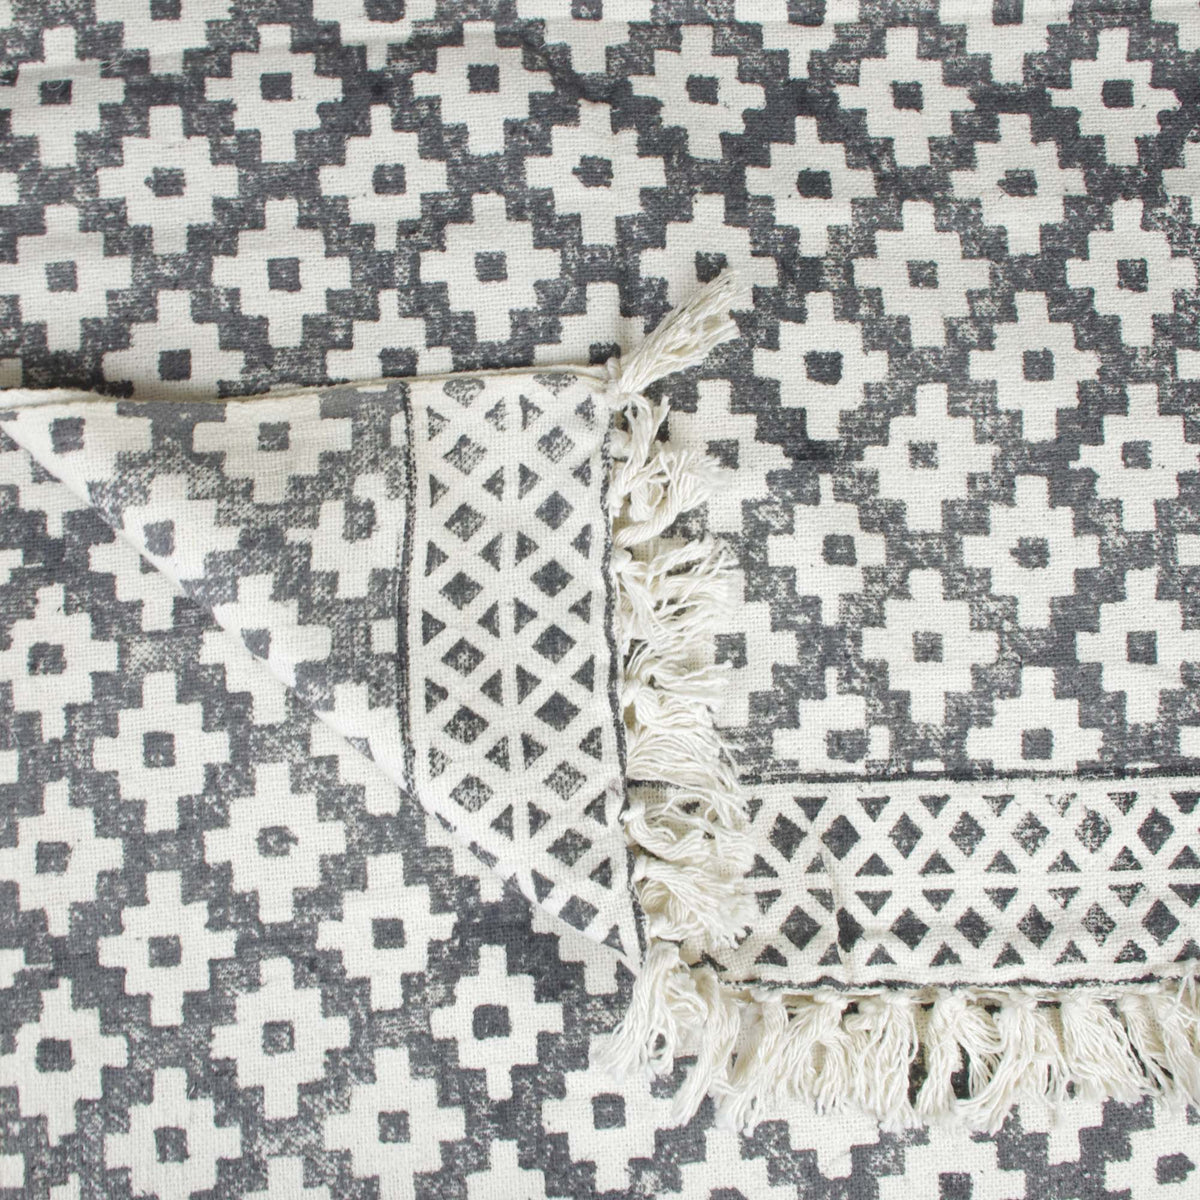 Blockbedruckter handgewebter Sofaüberwurf aus Baumwolle mit Quasten – grau-weiß geometrisch